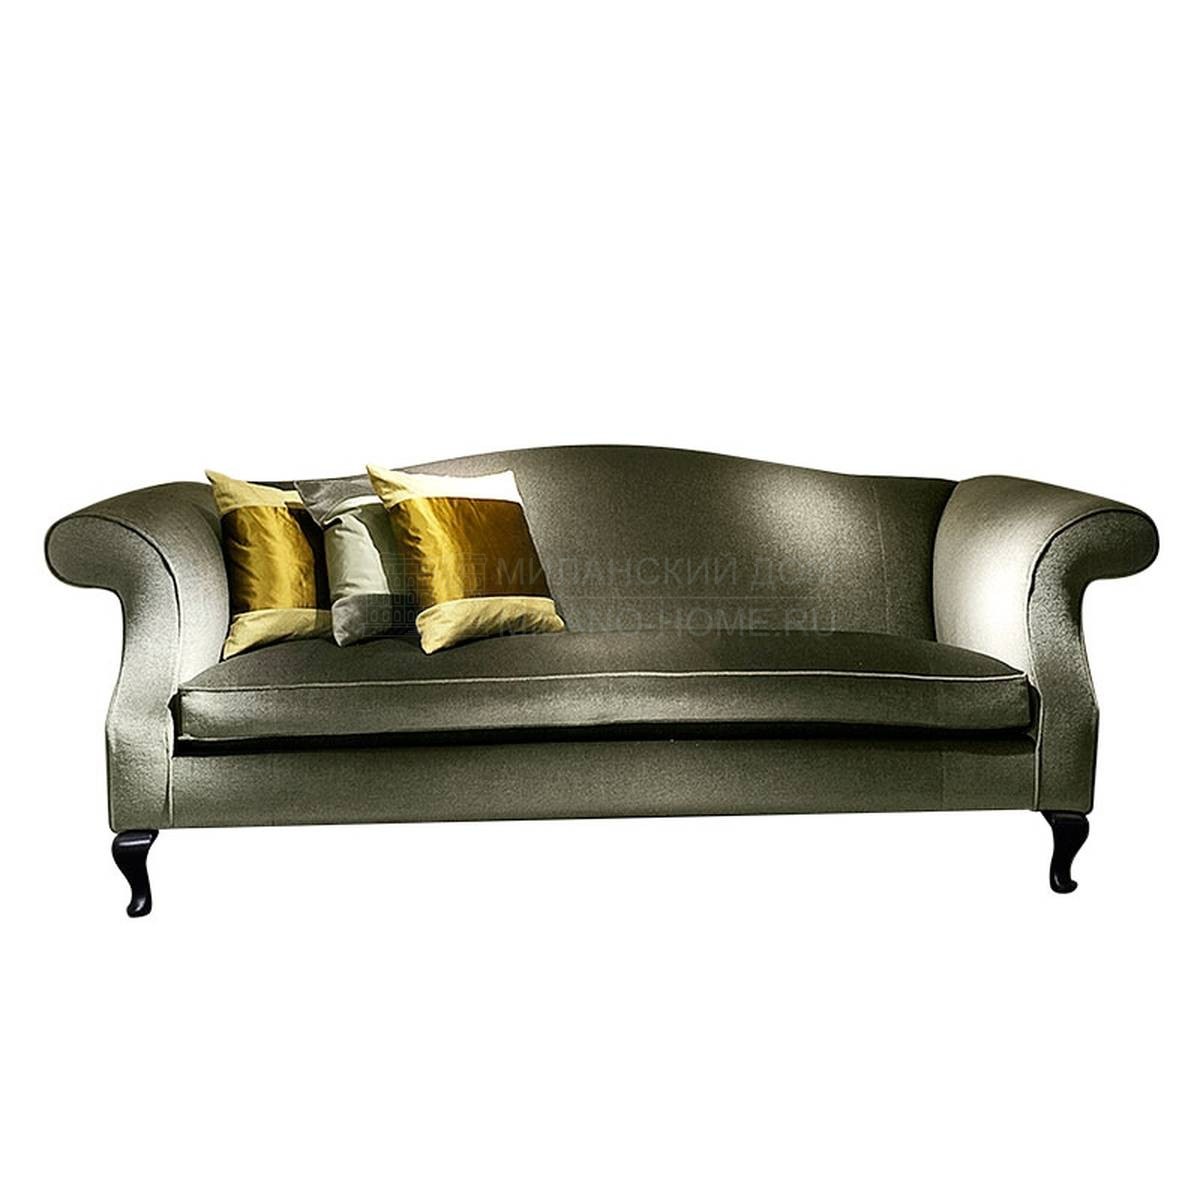 Прямой диван Cornelius/ sofa из Италии фабрики SOFTHOUSE